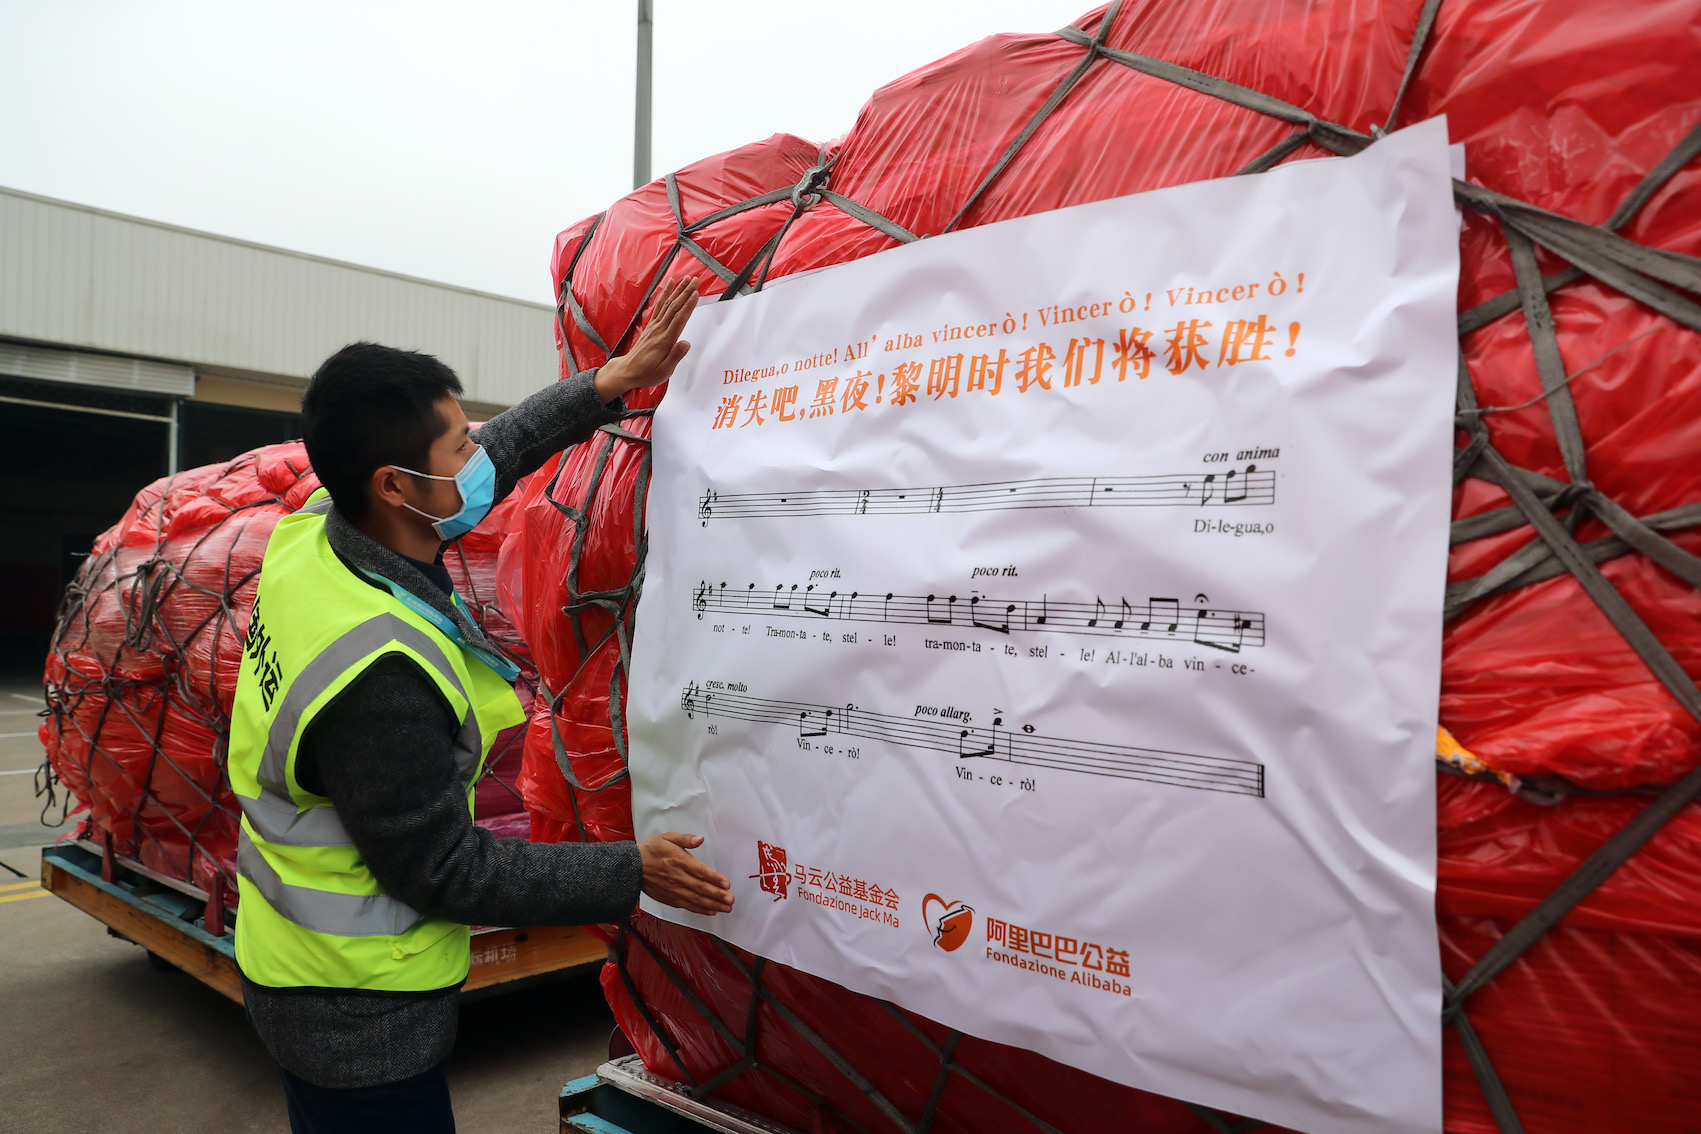 大批中国援欧物资抵达比利时 上面写有图兰朵歌词(图)